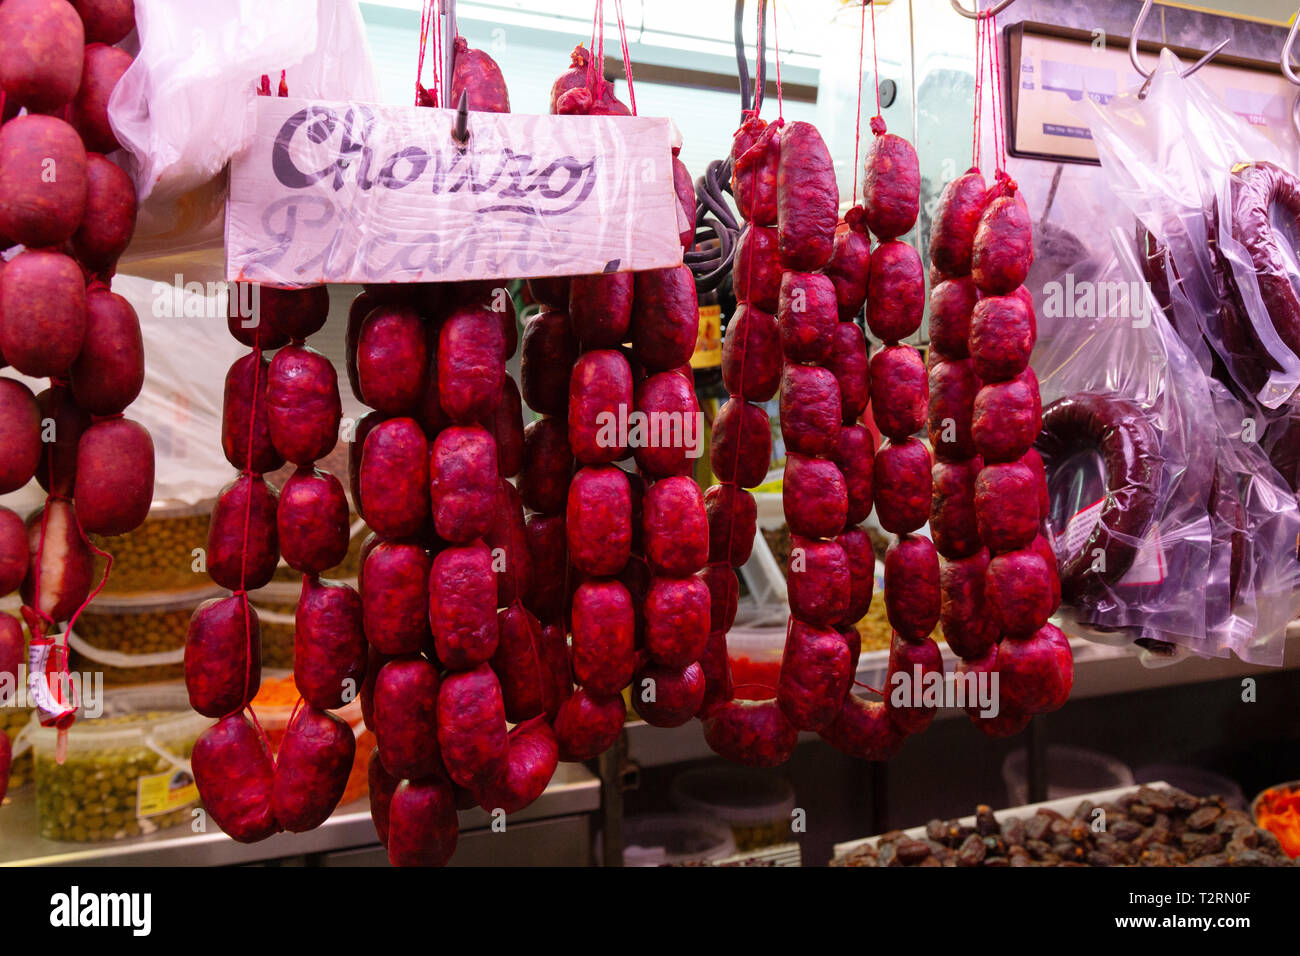 Chorizo accrochée pour la vente à un décrochage de l'alimentation, le Mercado Central de Atarazanas Malaga marché couvert, ( ), Malaga, Andalousie, Espagne Banque D'Images